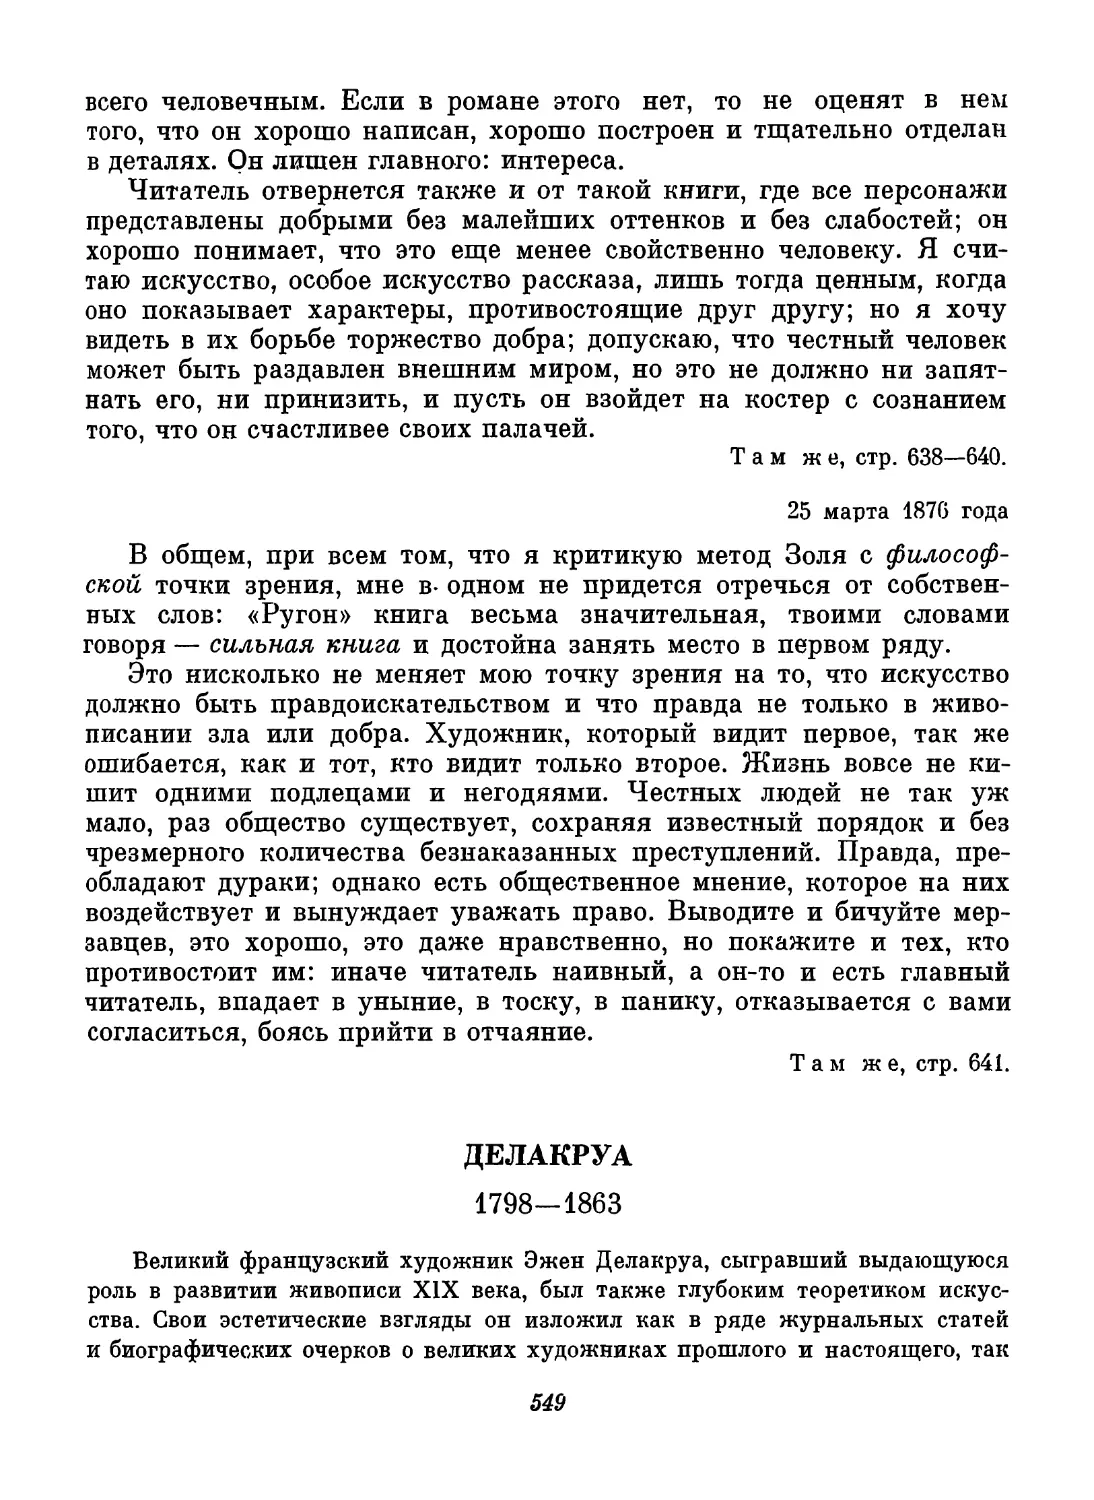 Делакруа. Вступительный текст И. А. Кузнецовой